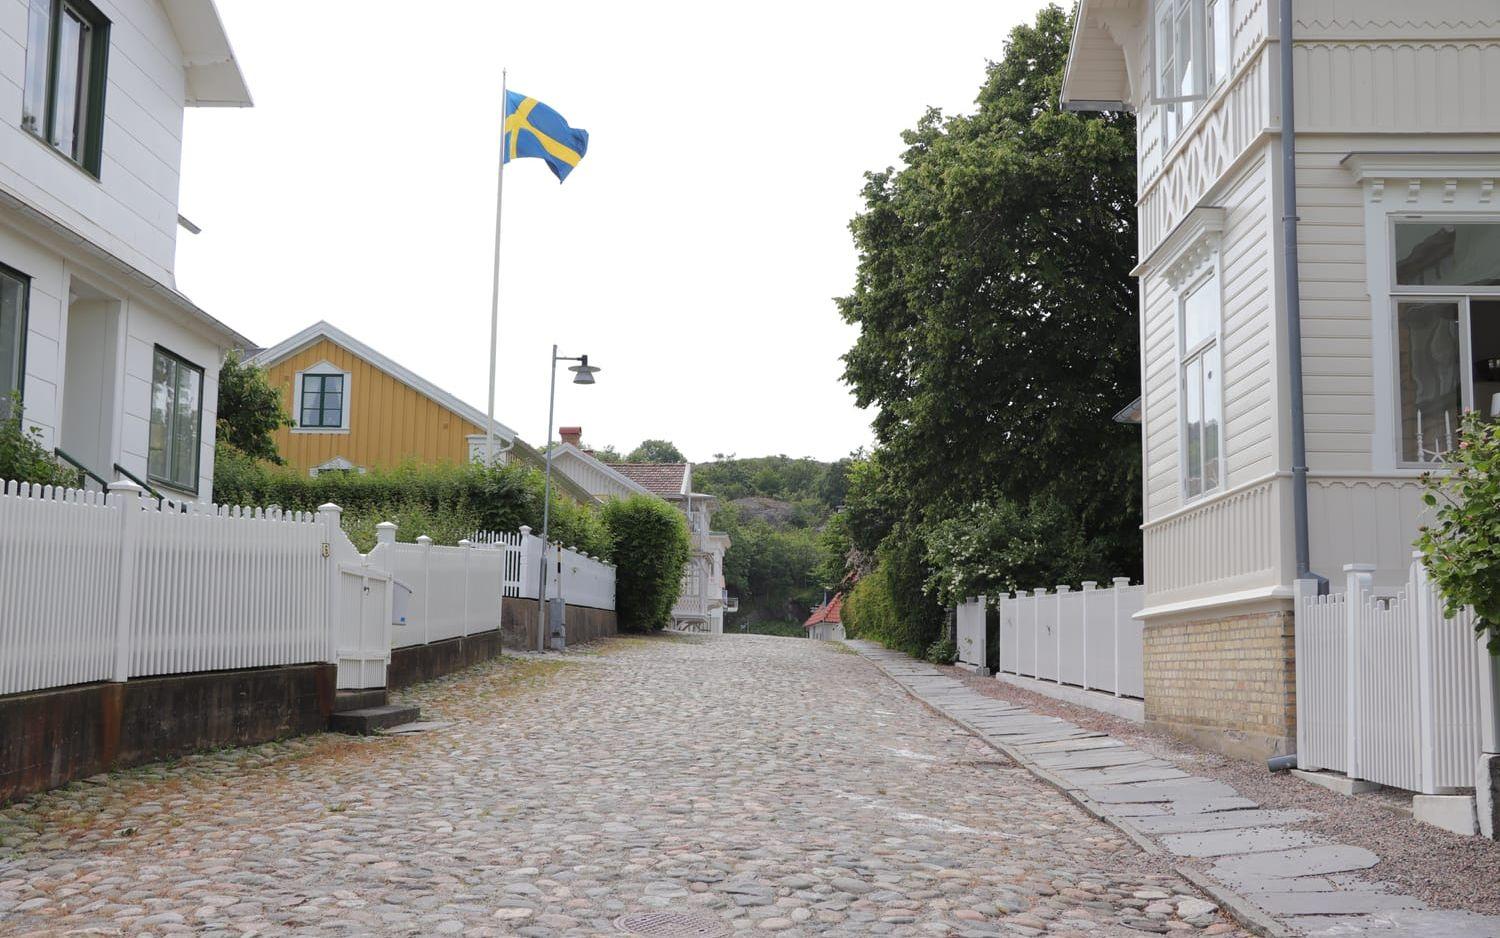 Villagatan är gatan med absolut flest villor på listan över högst taxeringsvärden på Marstrand. Skatteverket värderar hela sju hus till över 12 miljoner kronor.